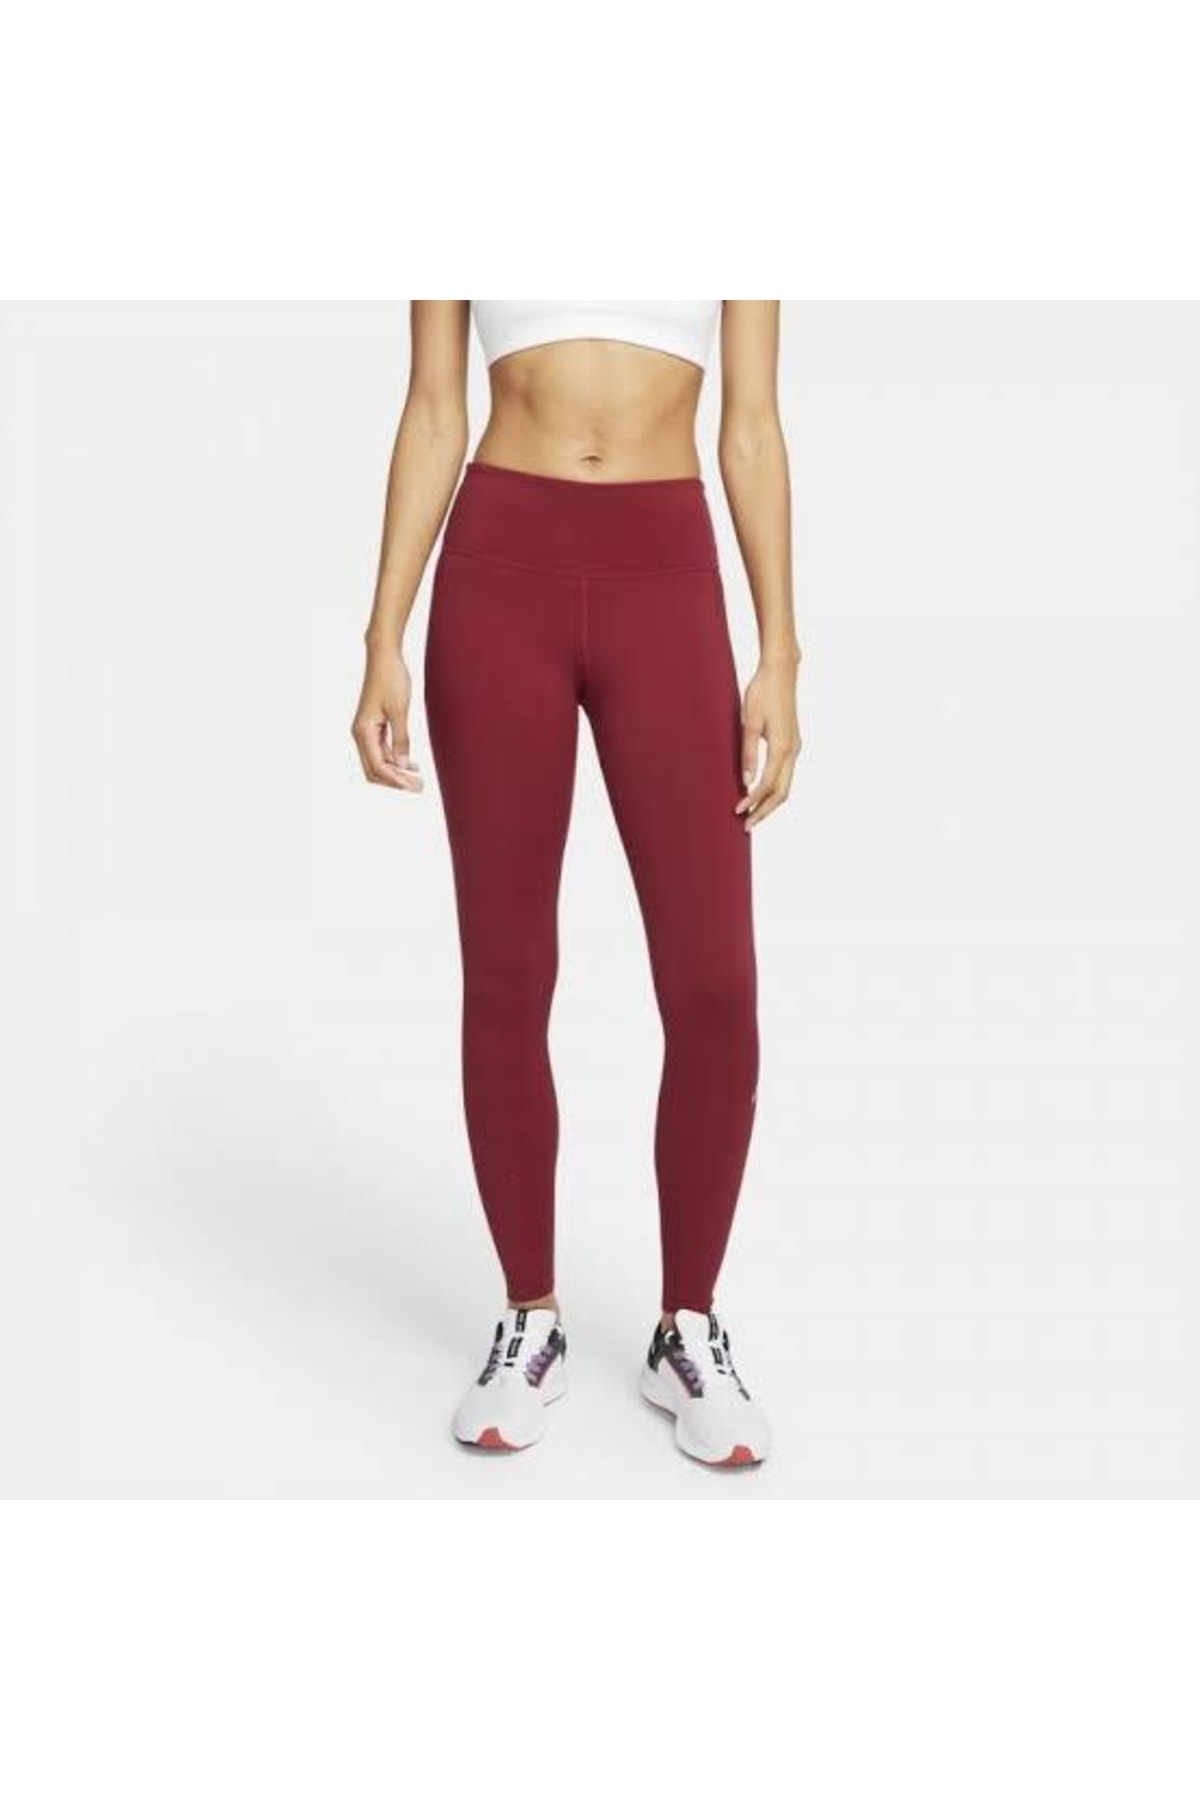 Nike Epic Luxe Running Leggings Kadın Koşu Taytı Cn8041-615